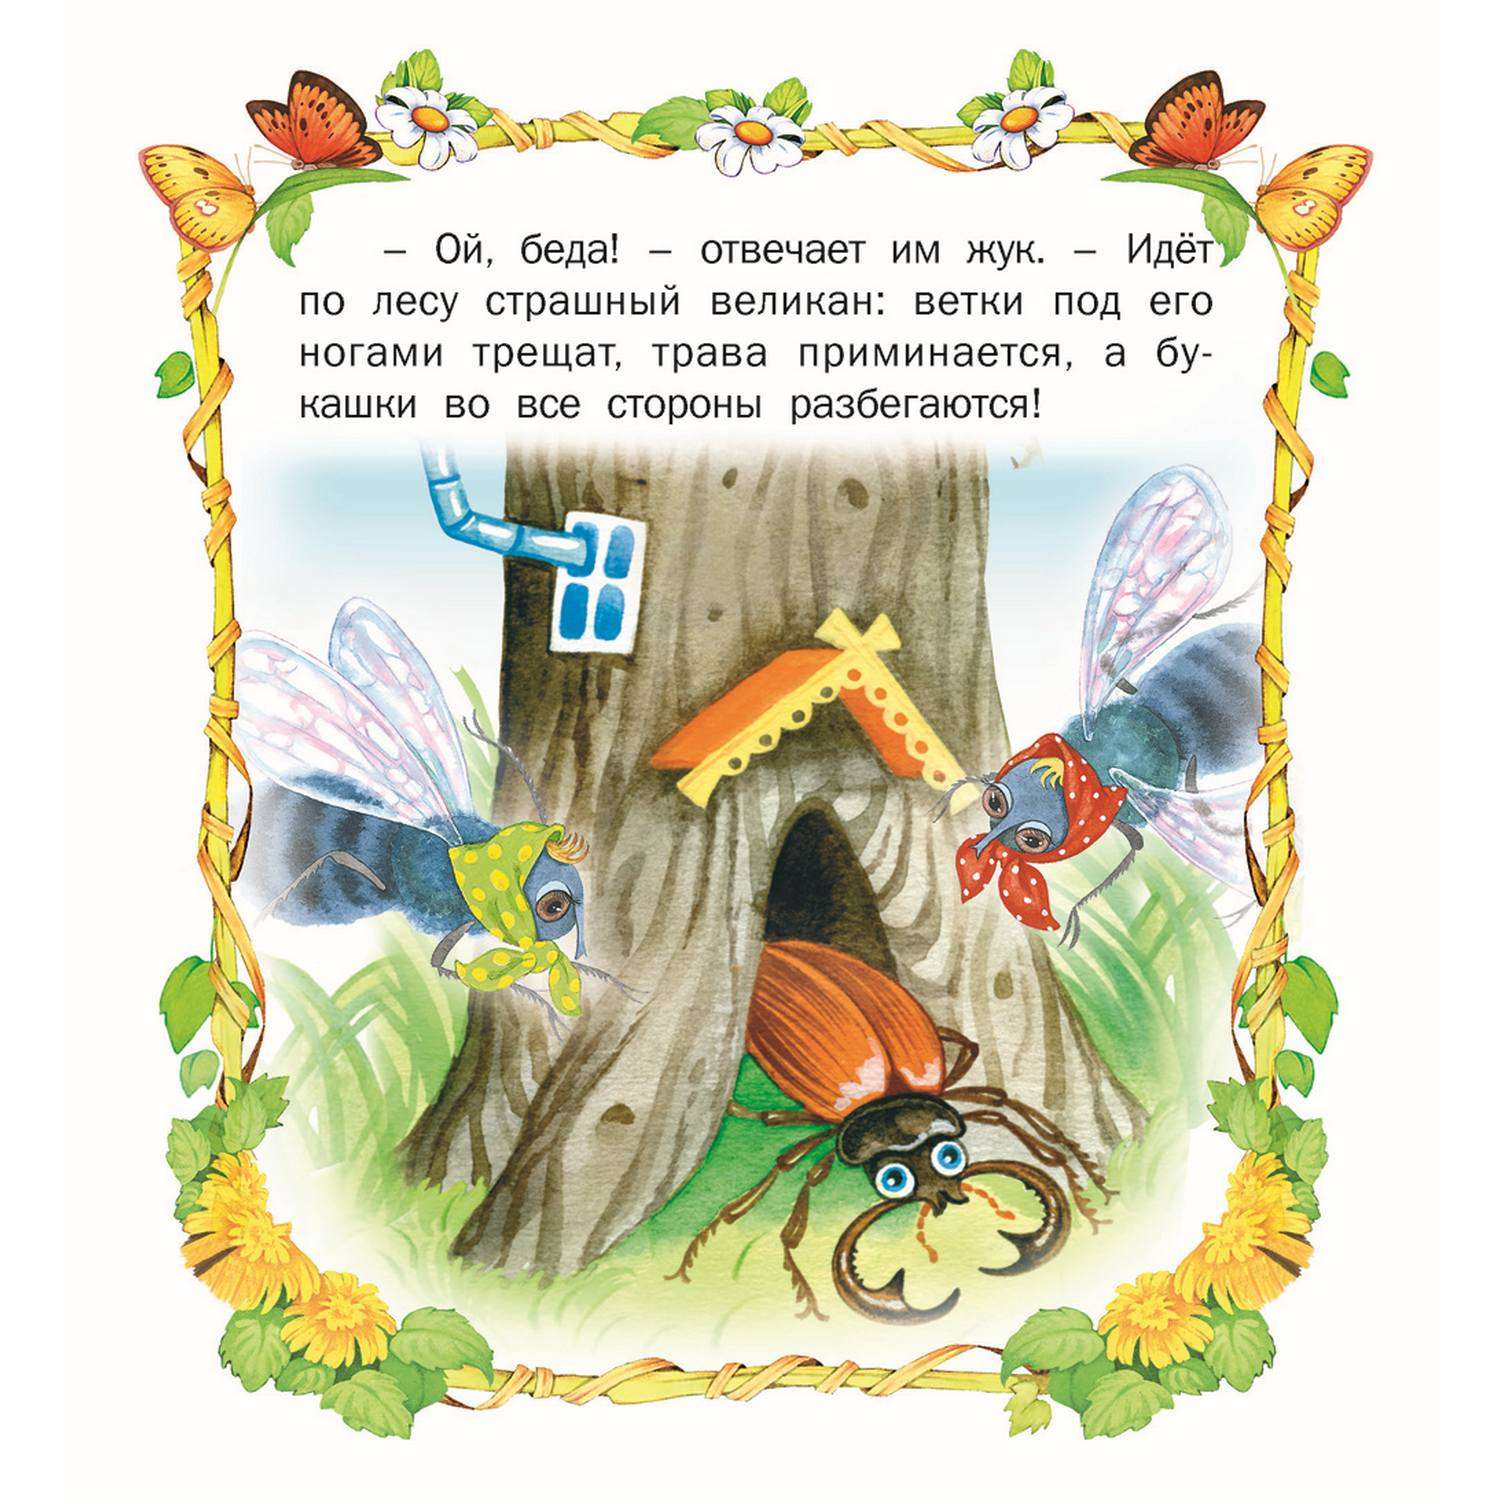 Книга Русич сборник стихов и сказок для детей. Комплект 5 шт - фото 12